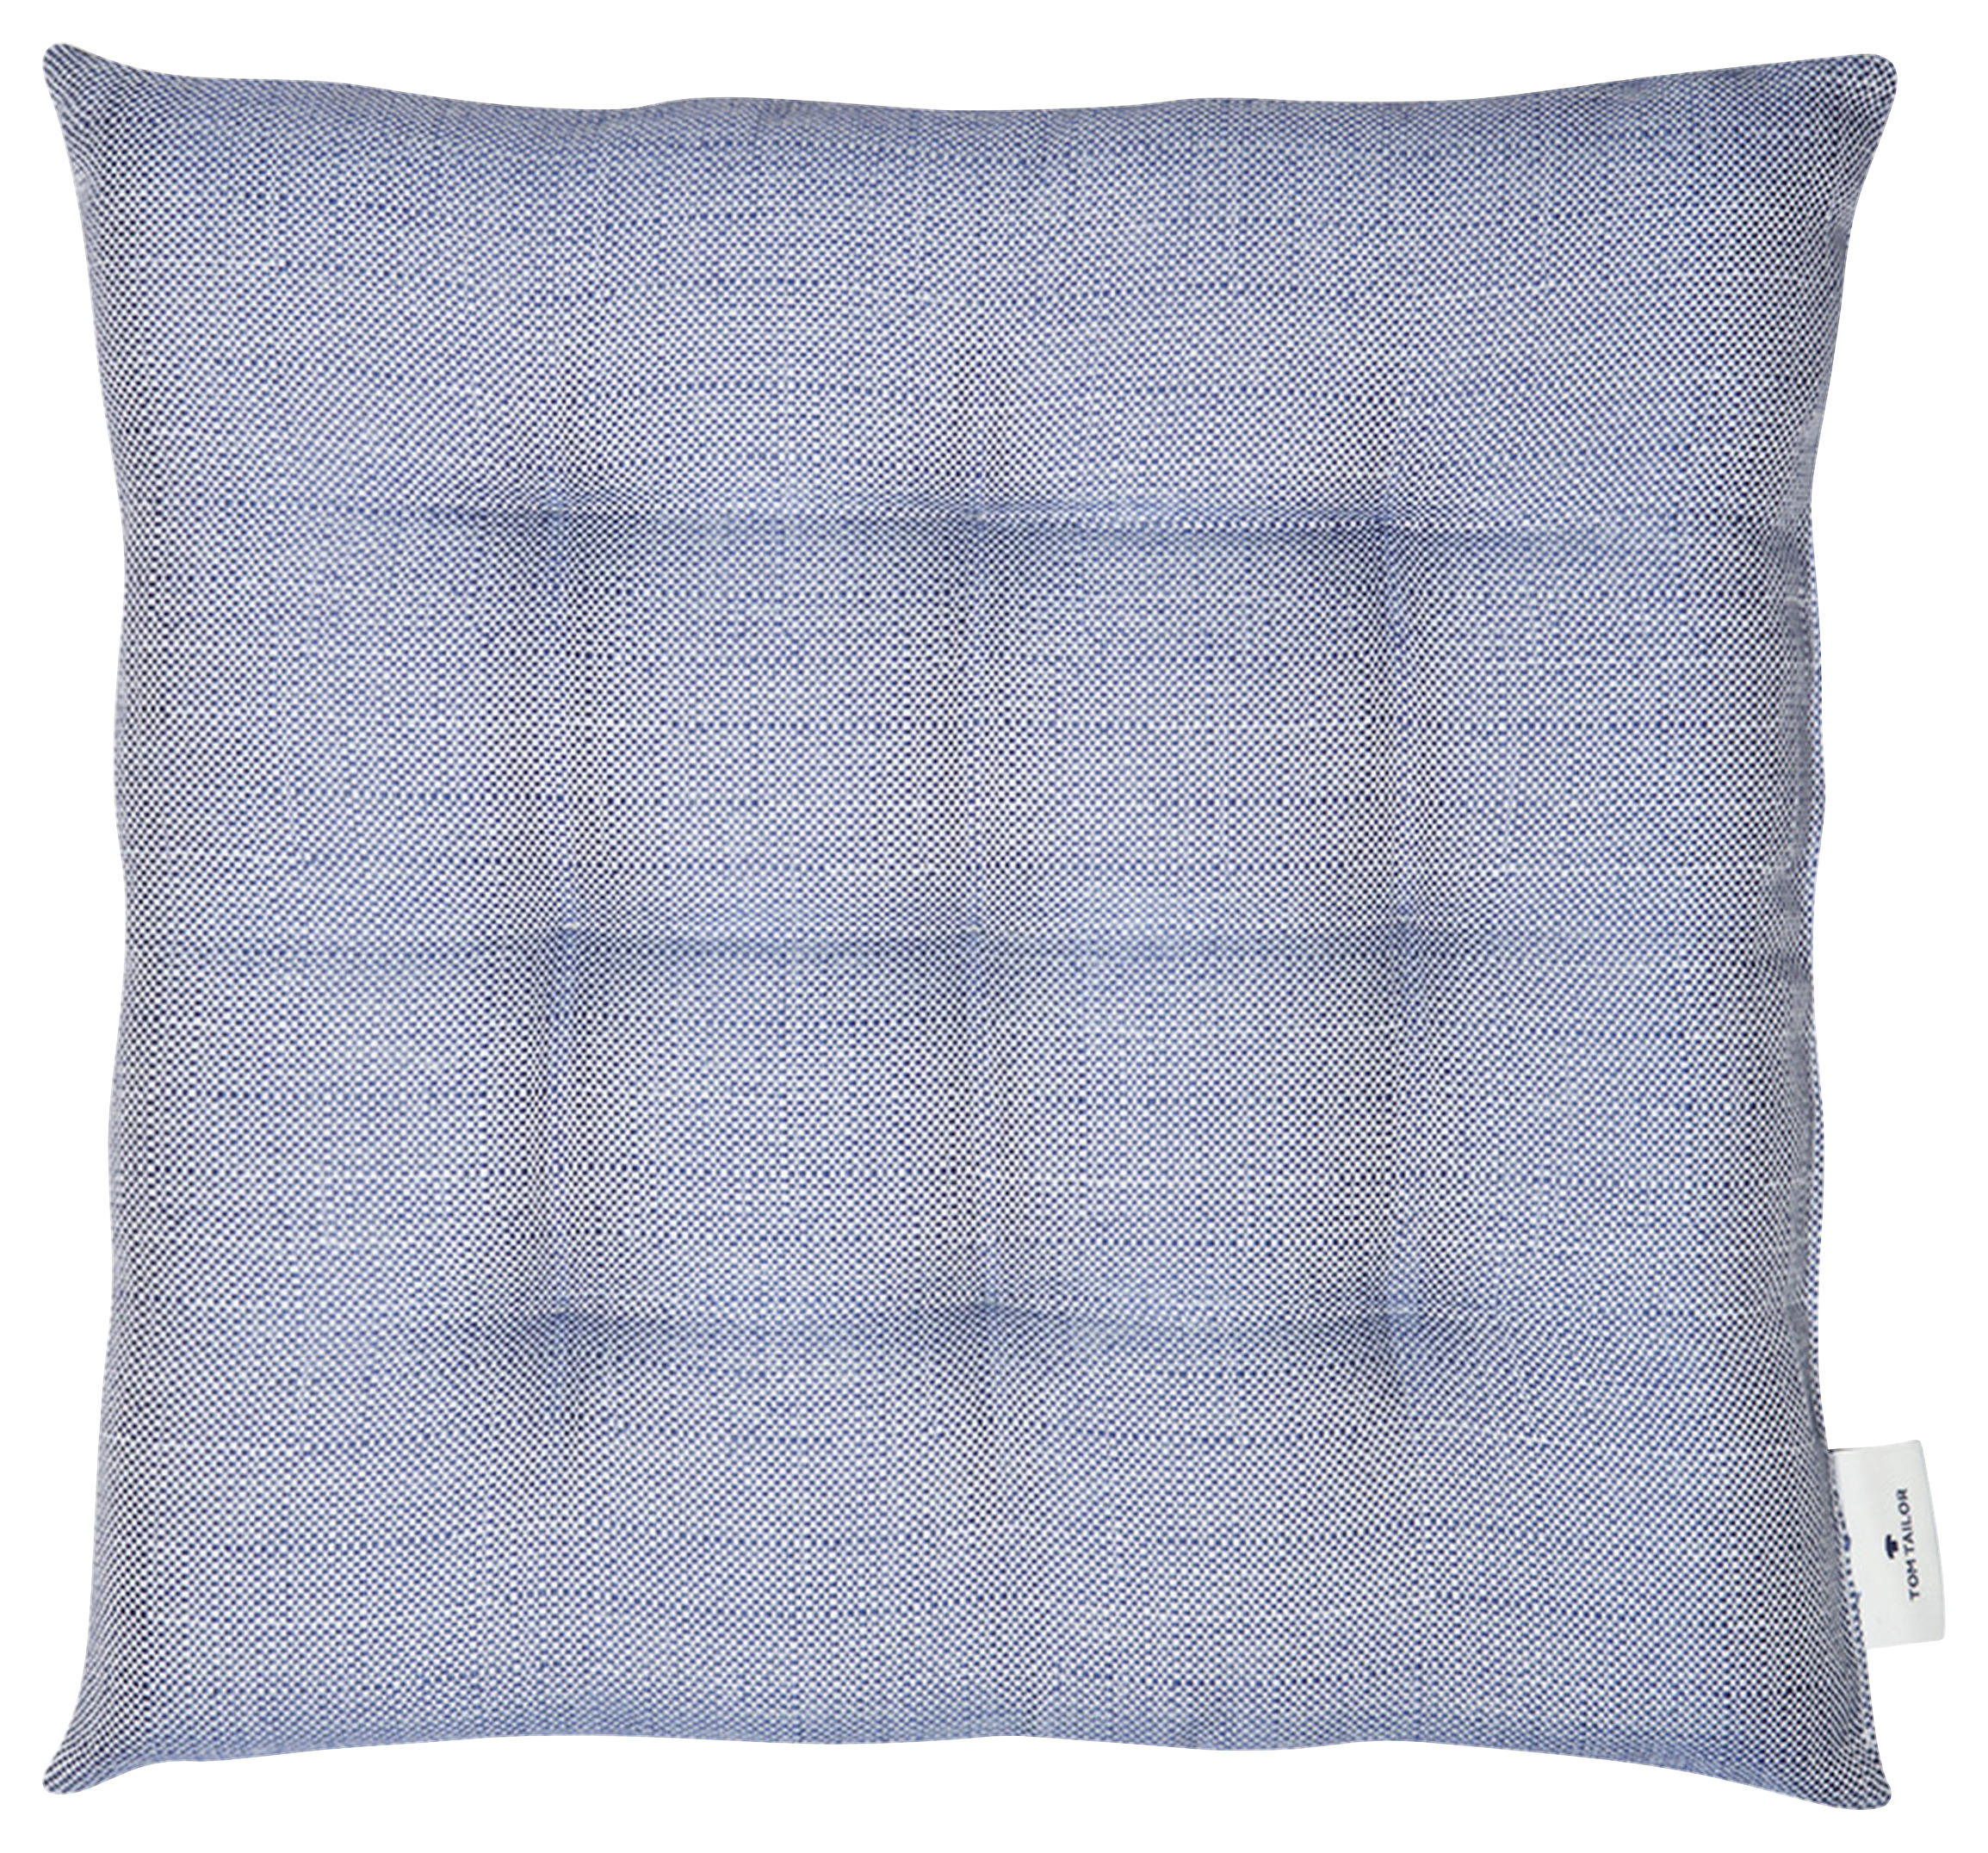 SITZKISSEN Fresh 40/40 cm  - Blau/Beige, KONVENTIONELL, Textil (40/40cm) - Tom Tailor